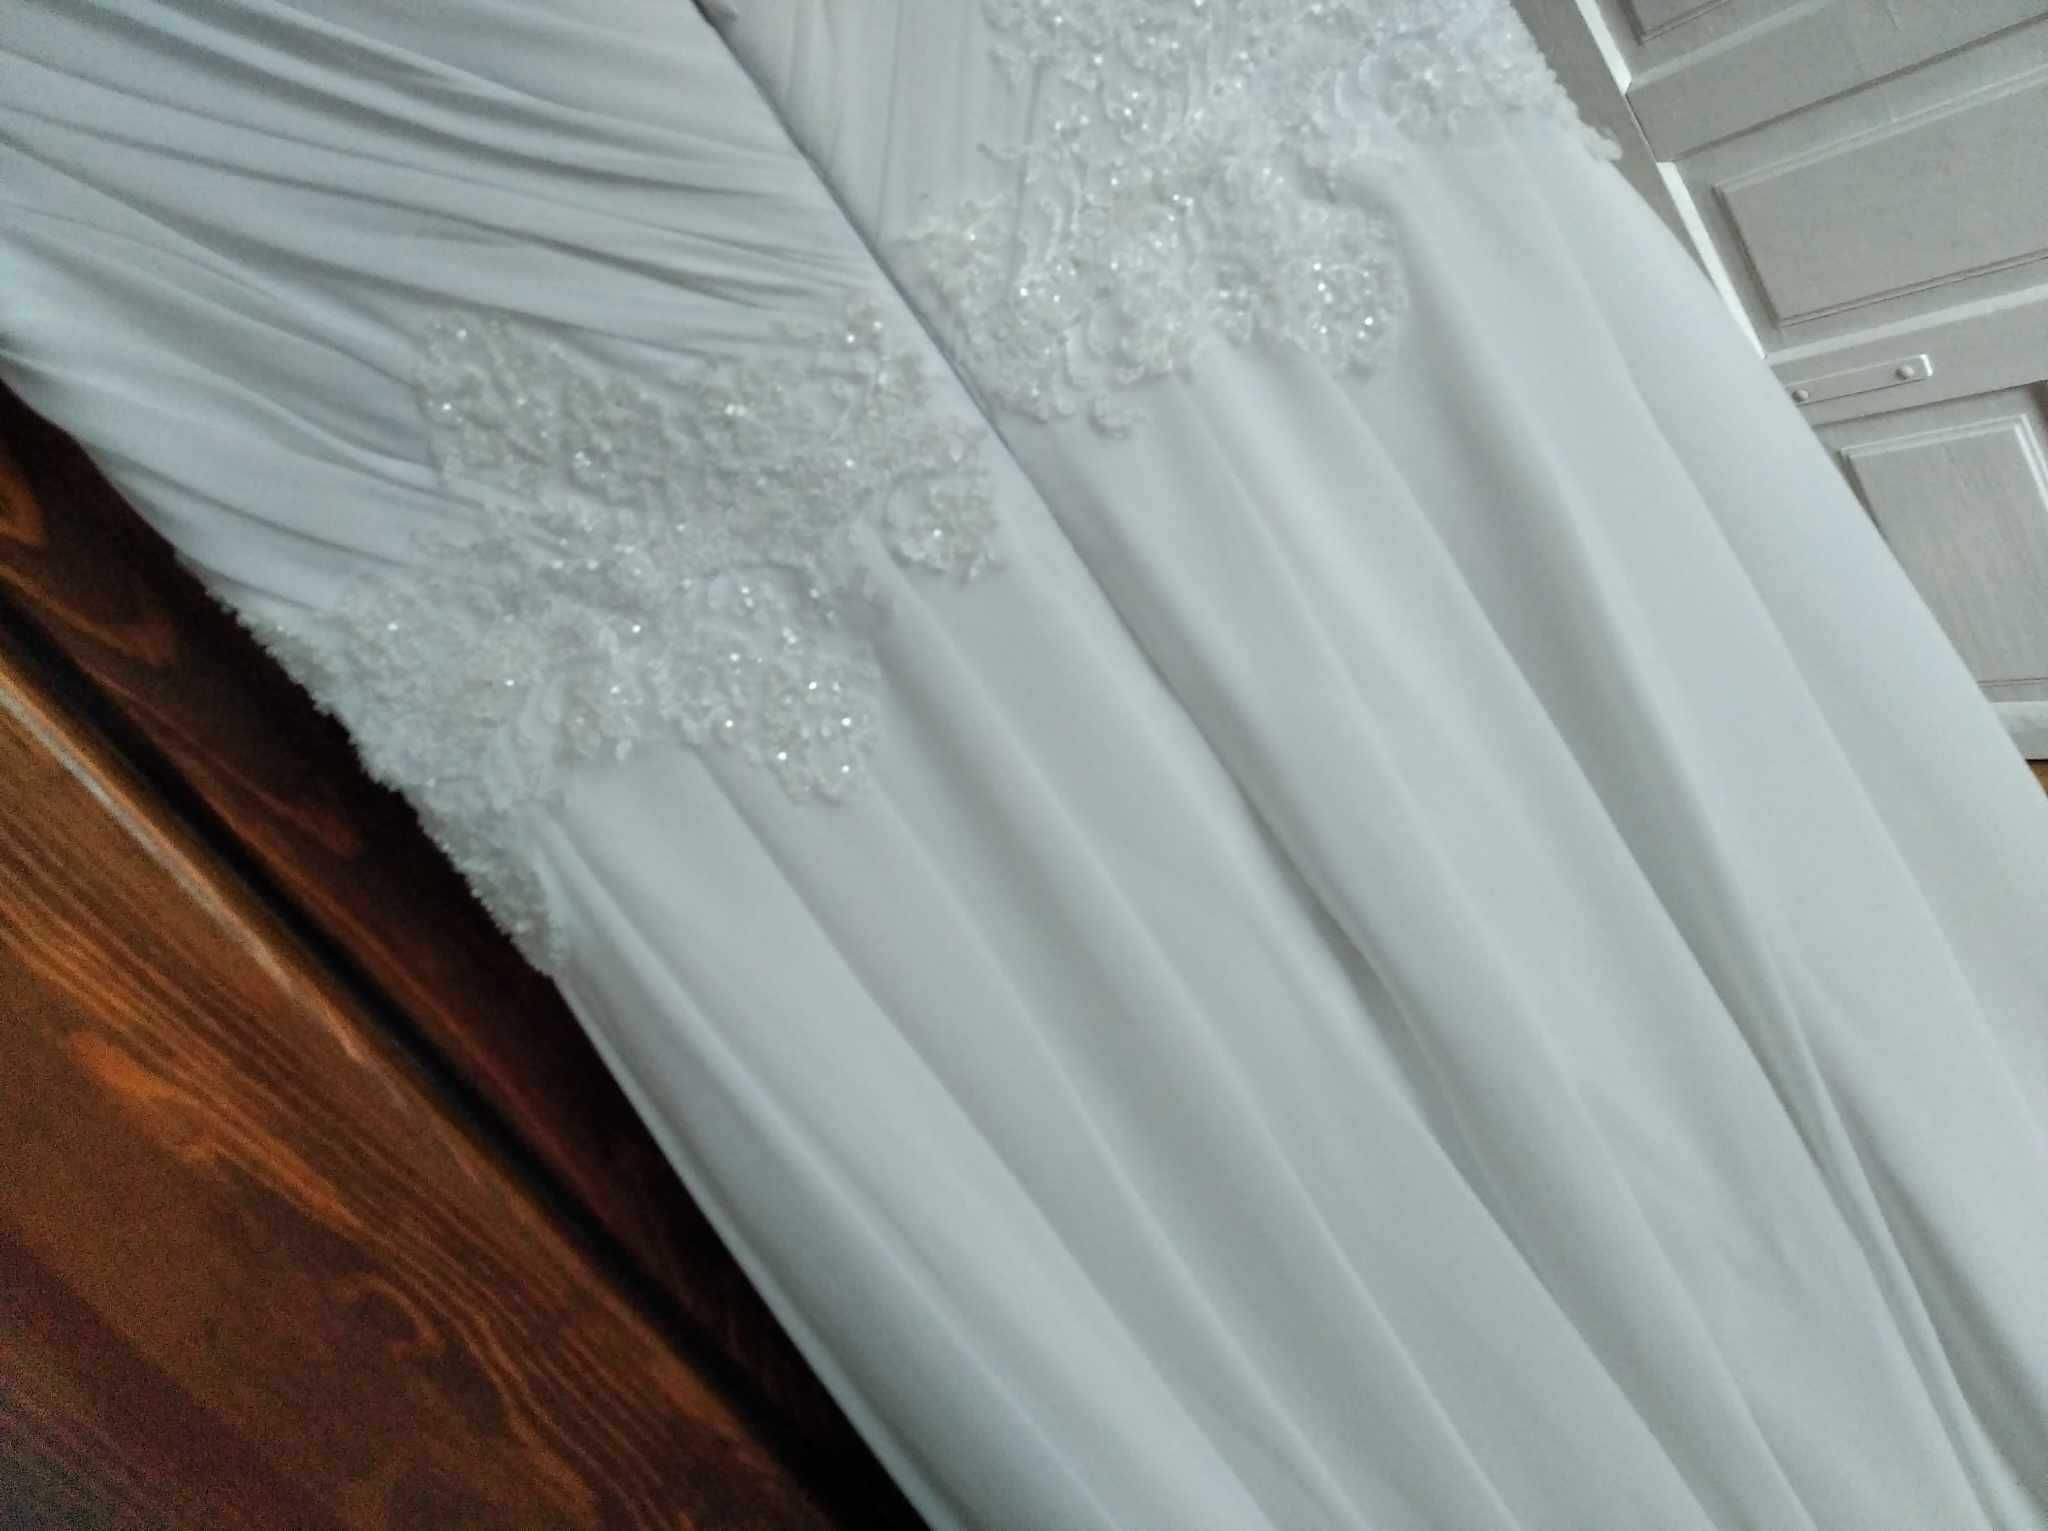 suknia ślubna biała długa 38